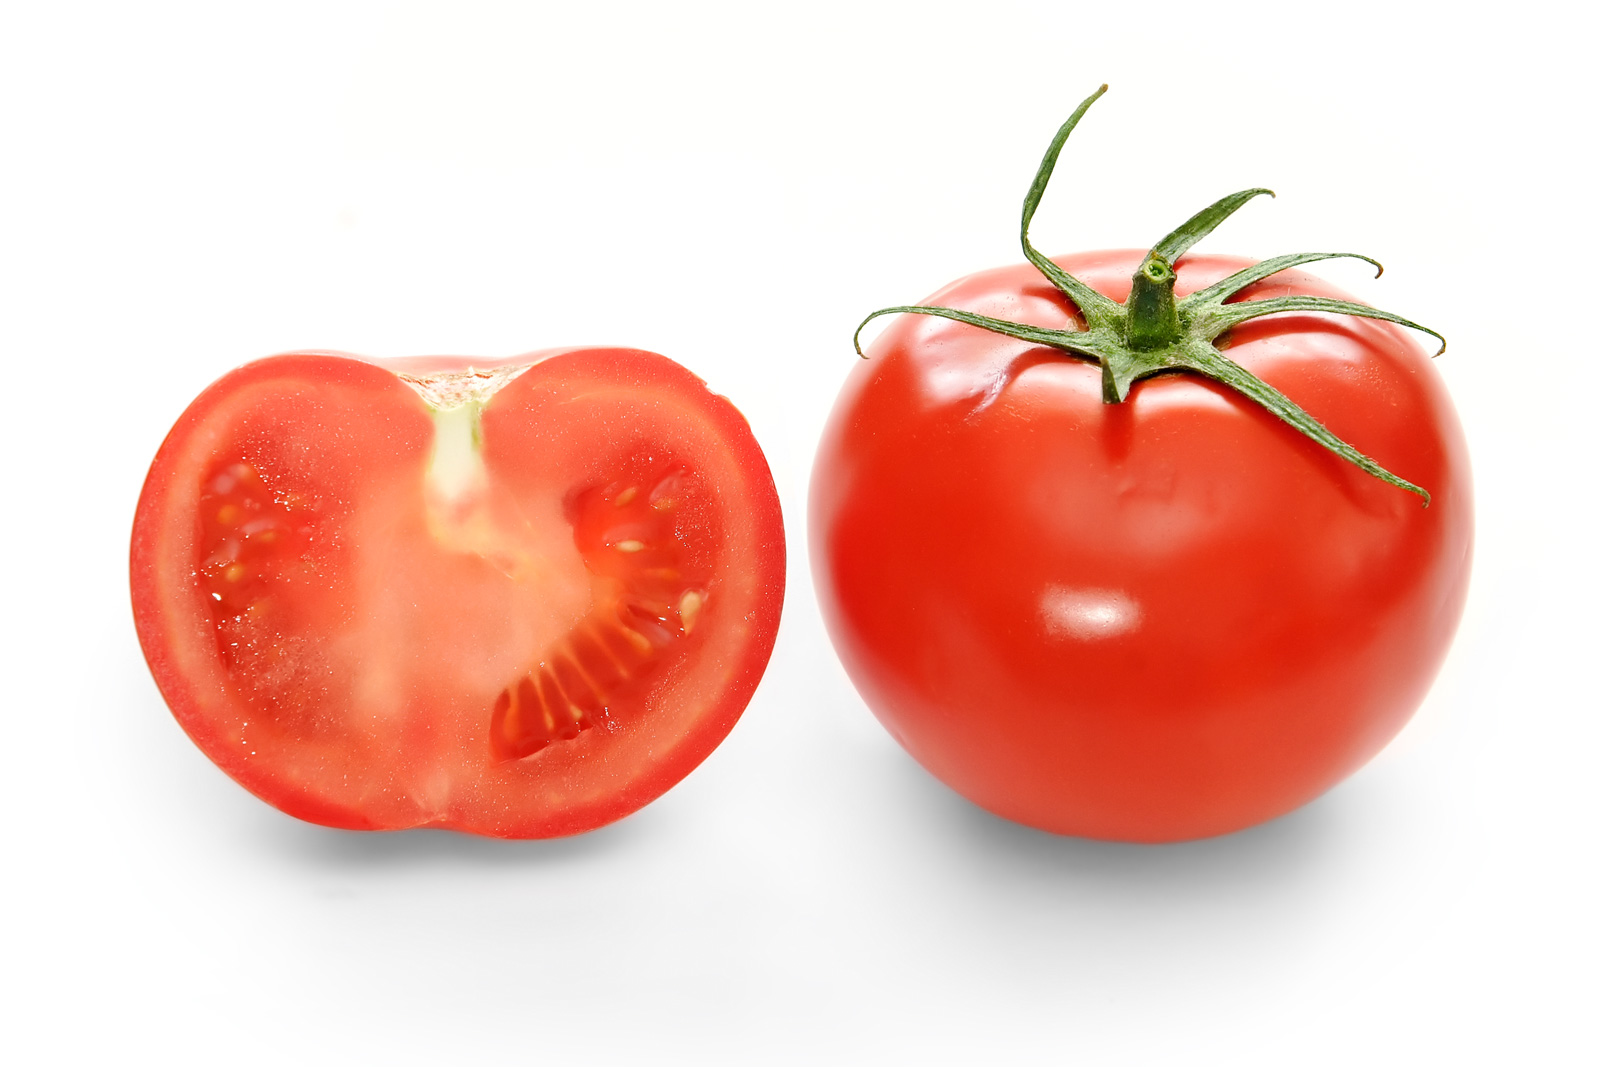 Hybrid Tomato